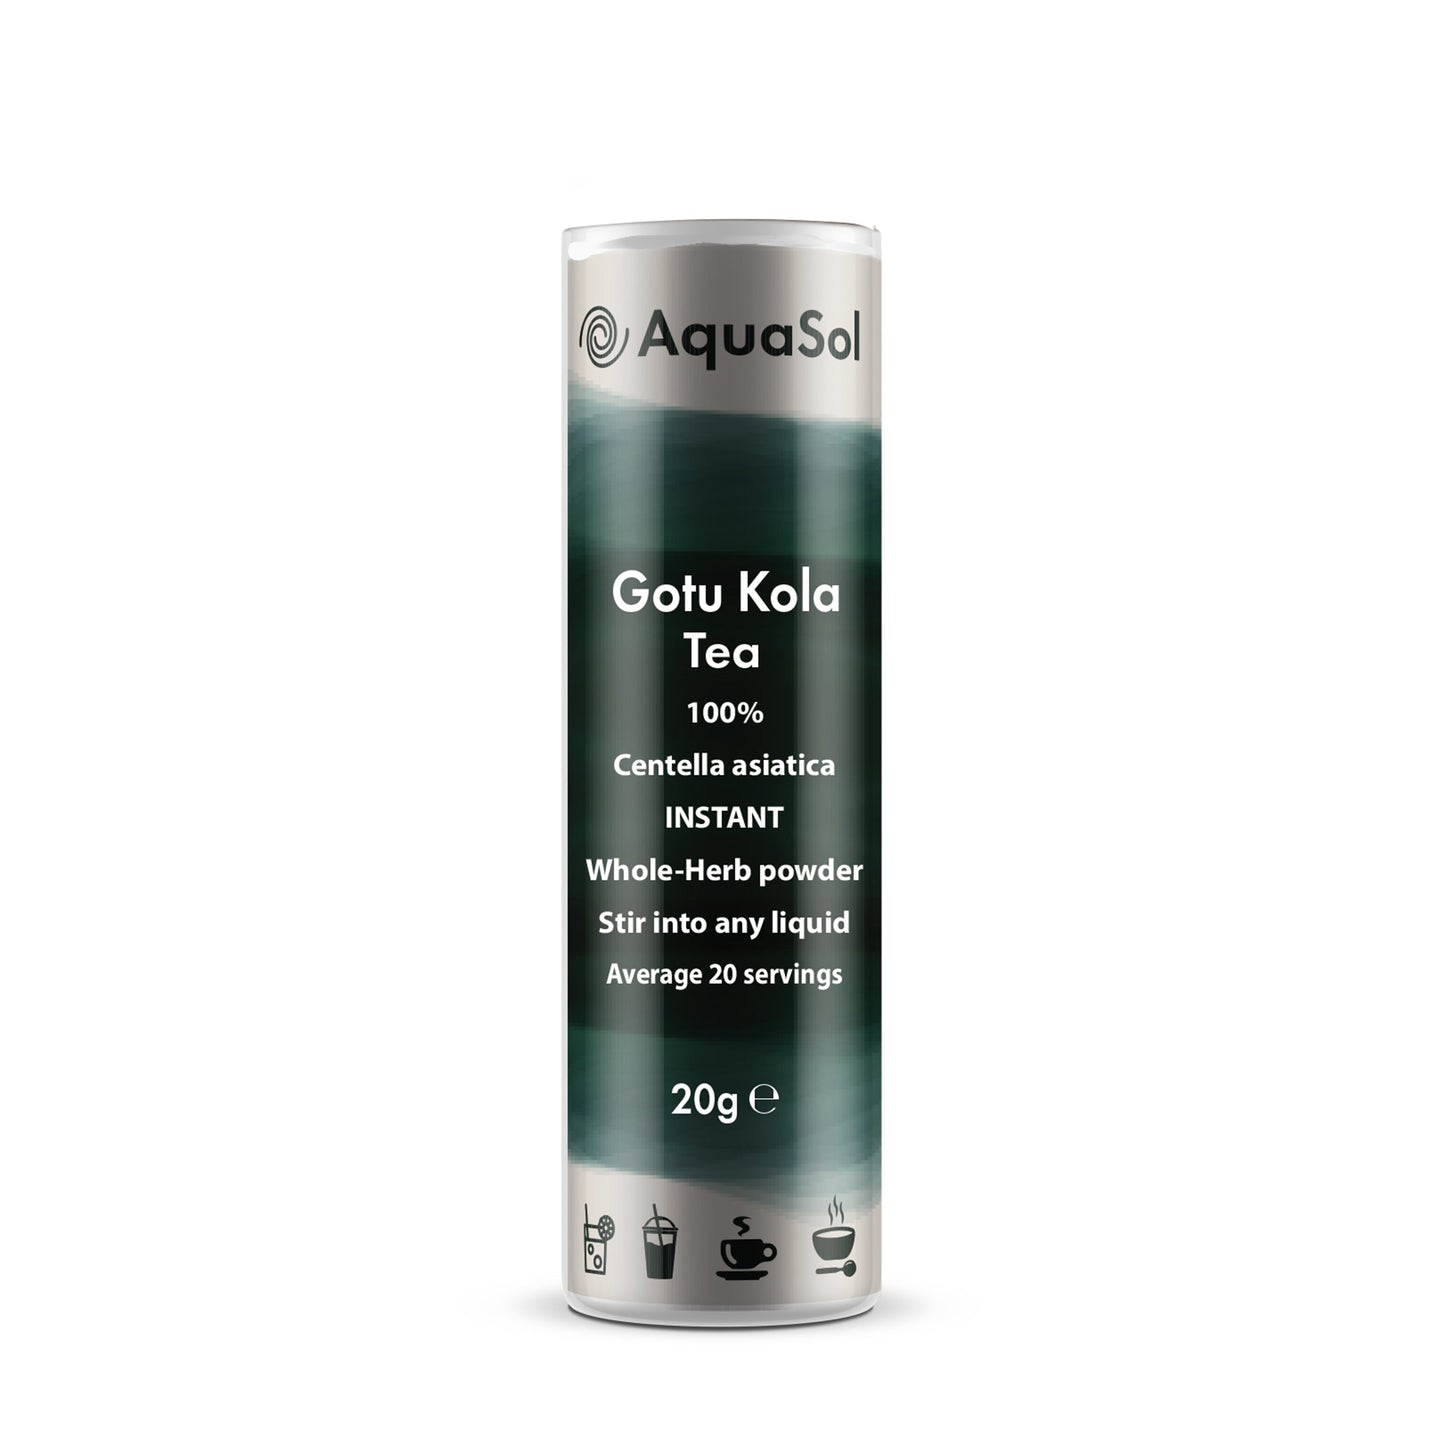 Aquasol Gotu Kola Instant Herbal Tea 20g - Just Natural